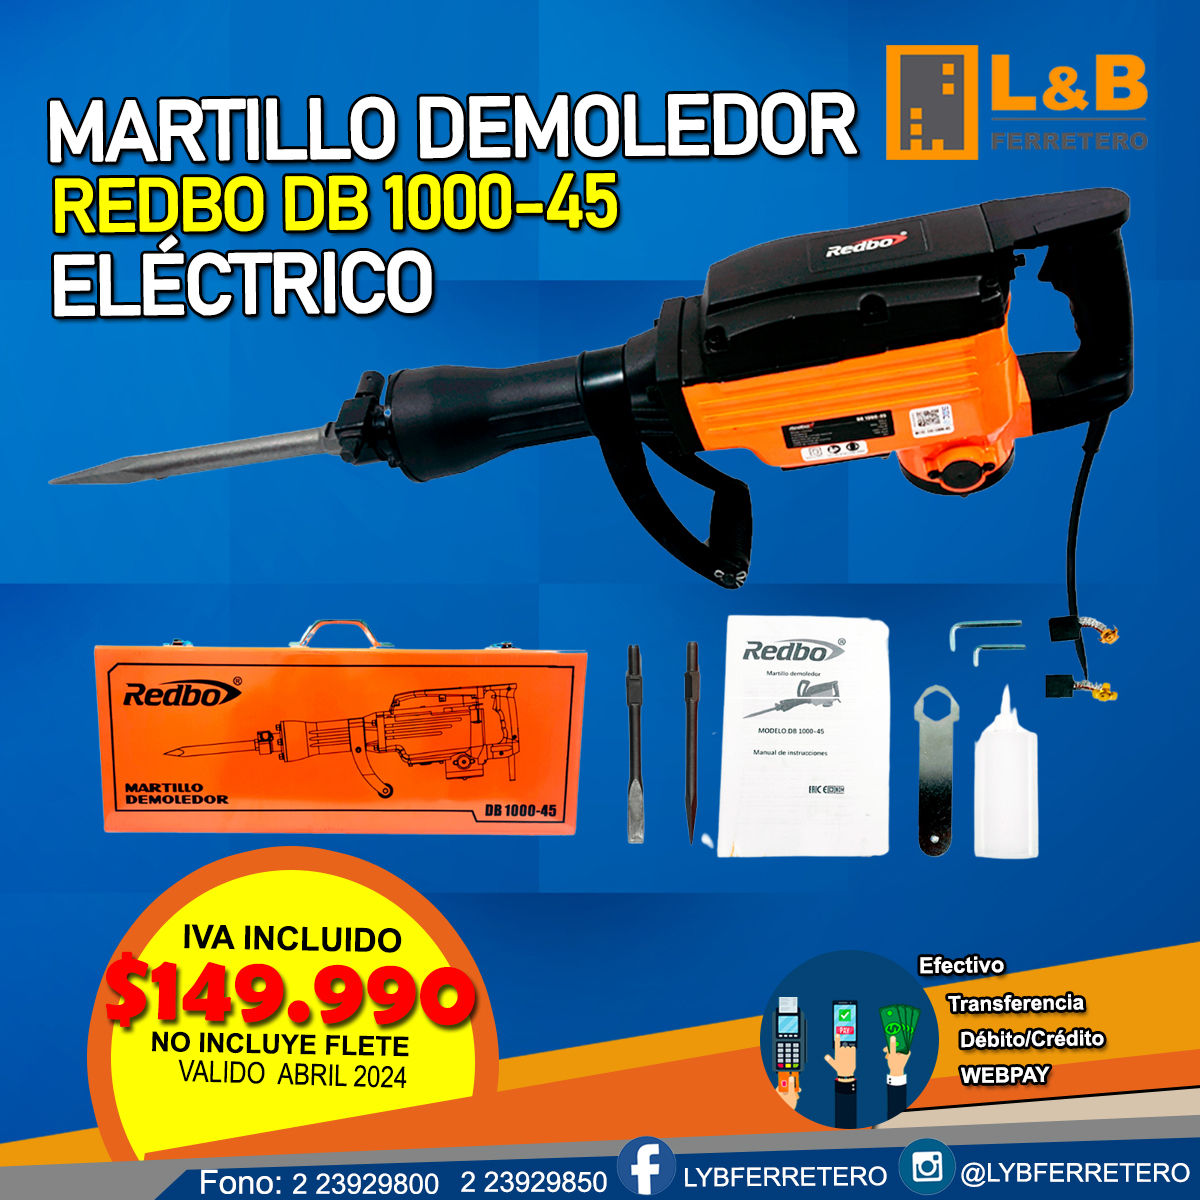 Martillo Demoledor DB 1000-45 REDBO